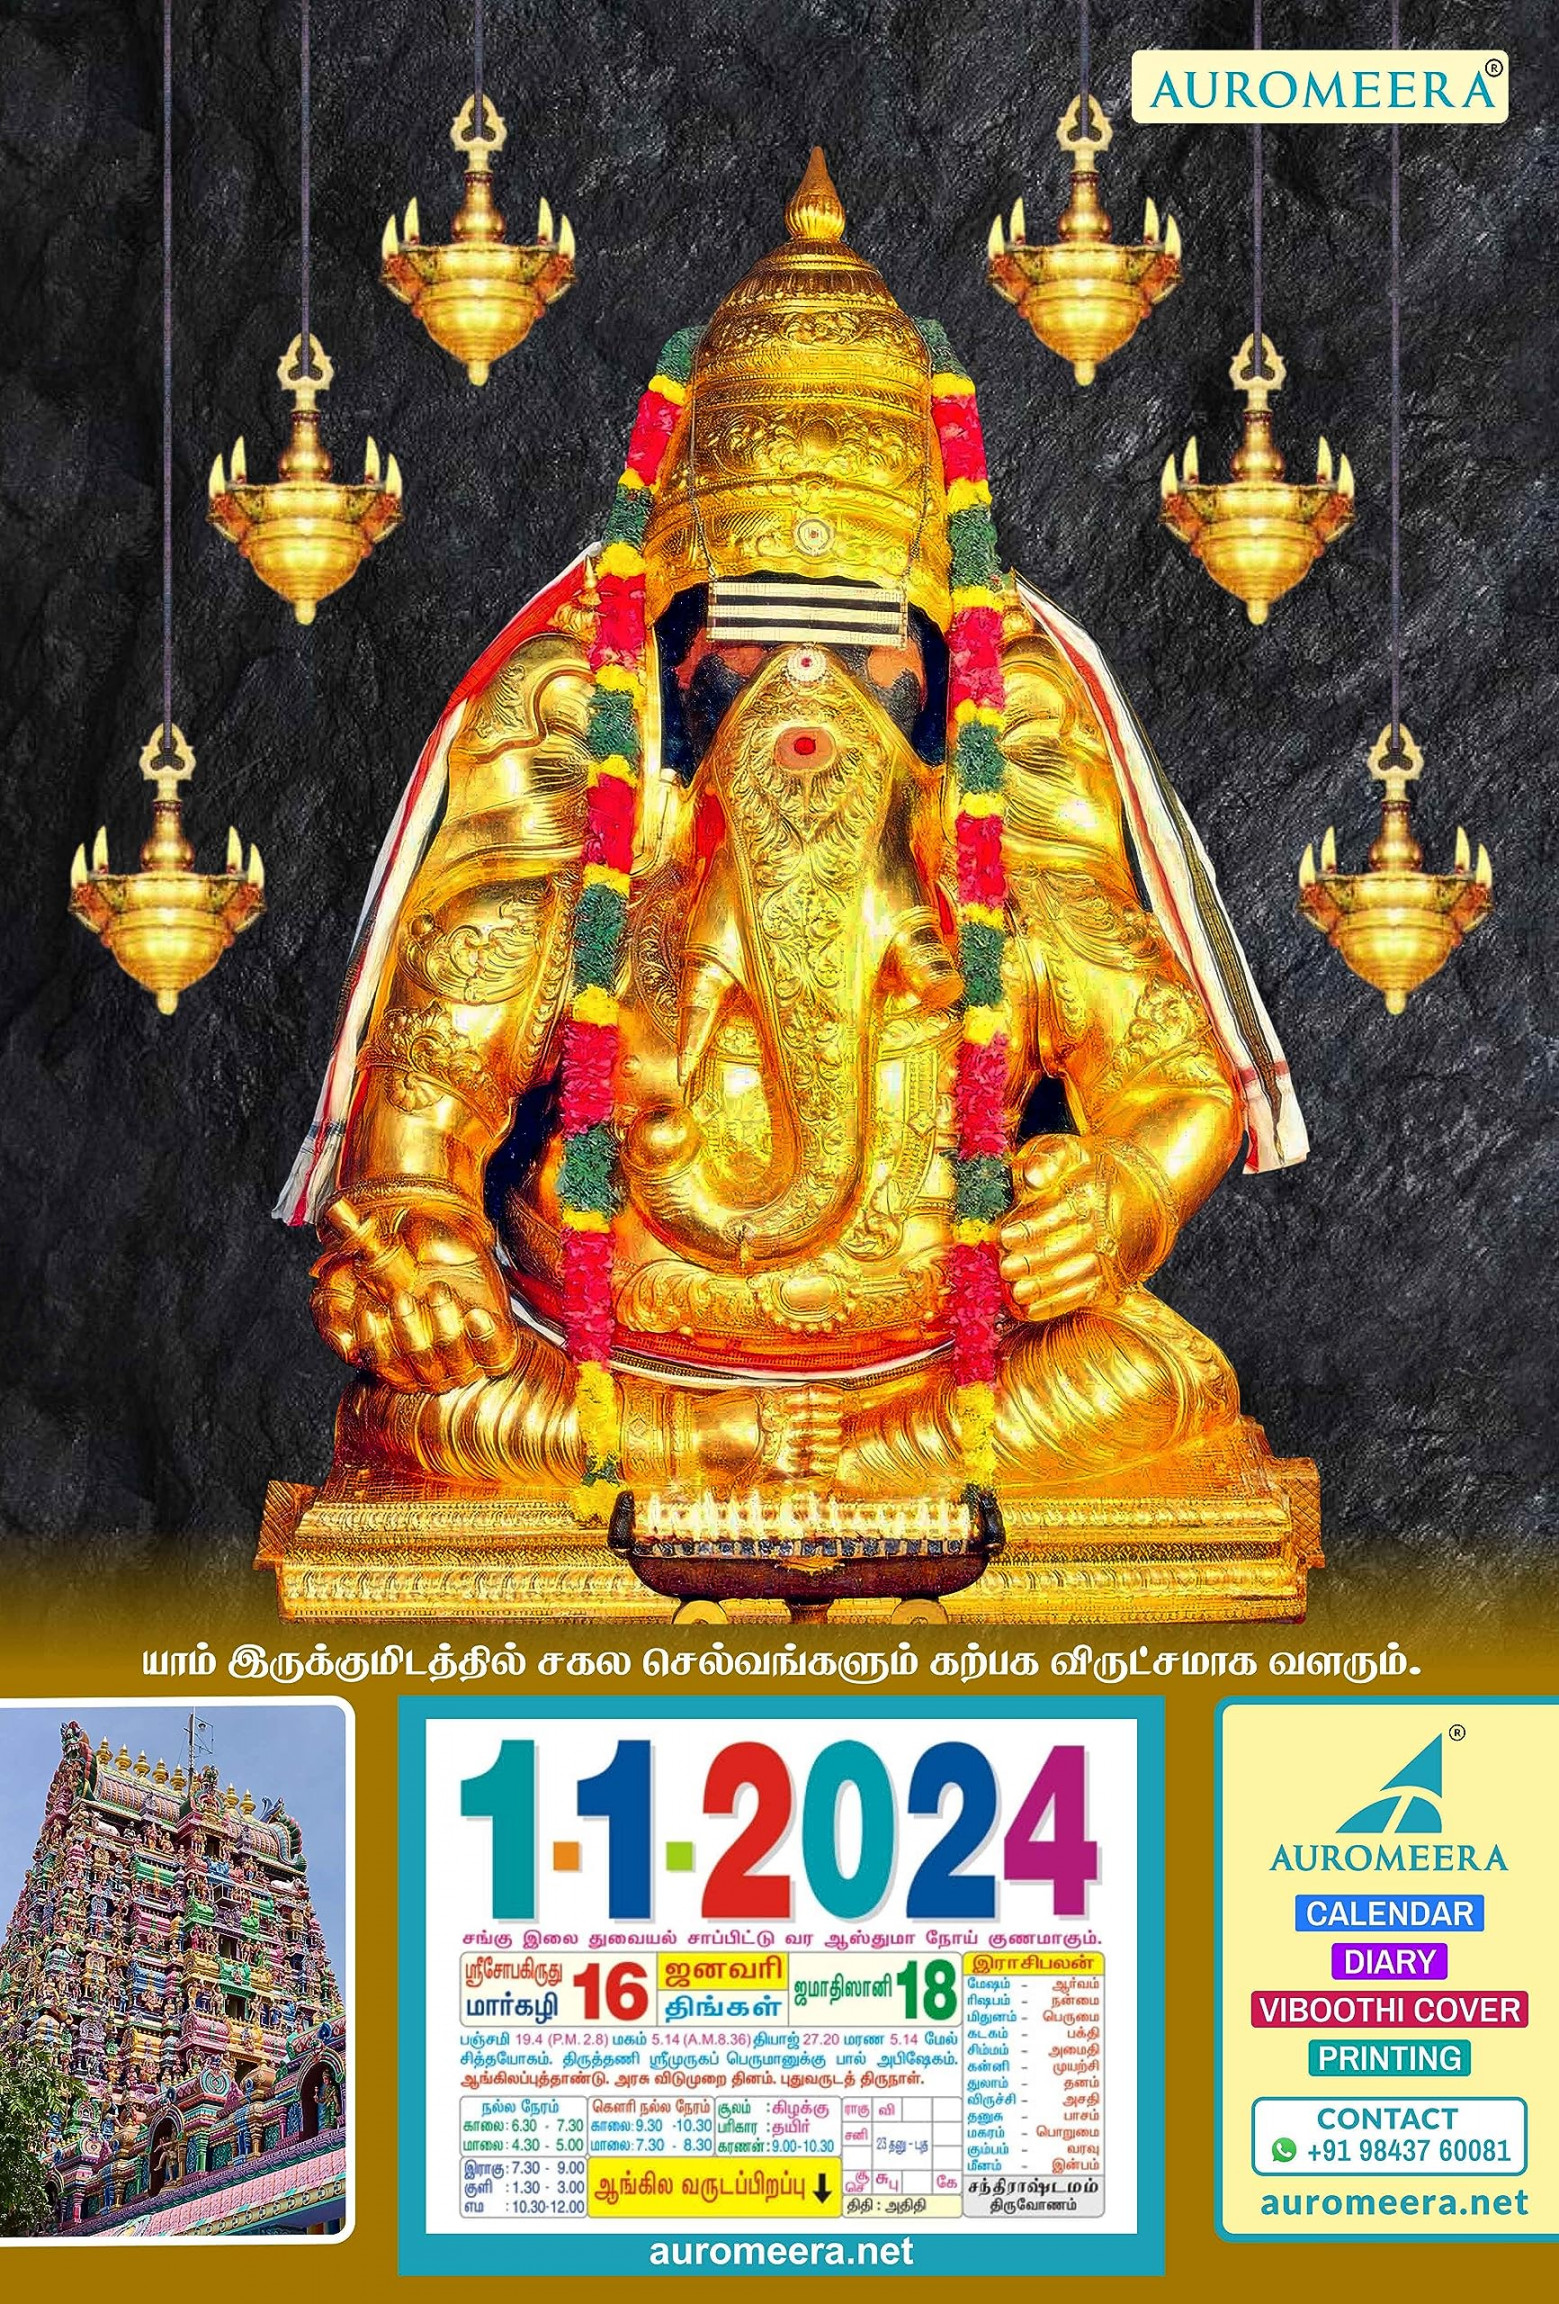 AURO MEERA Tamil Daily Sheet Calendar , Pillayarpatti